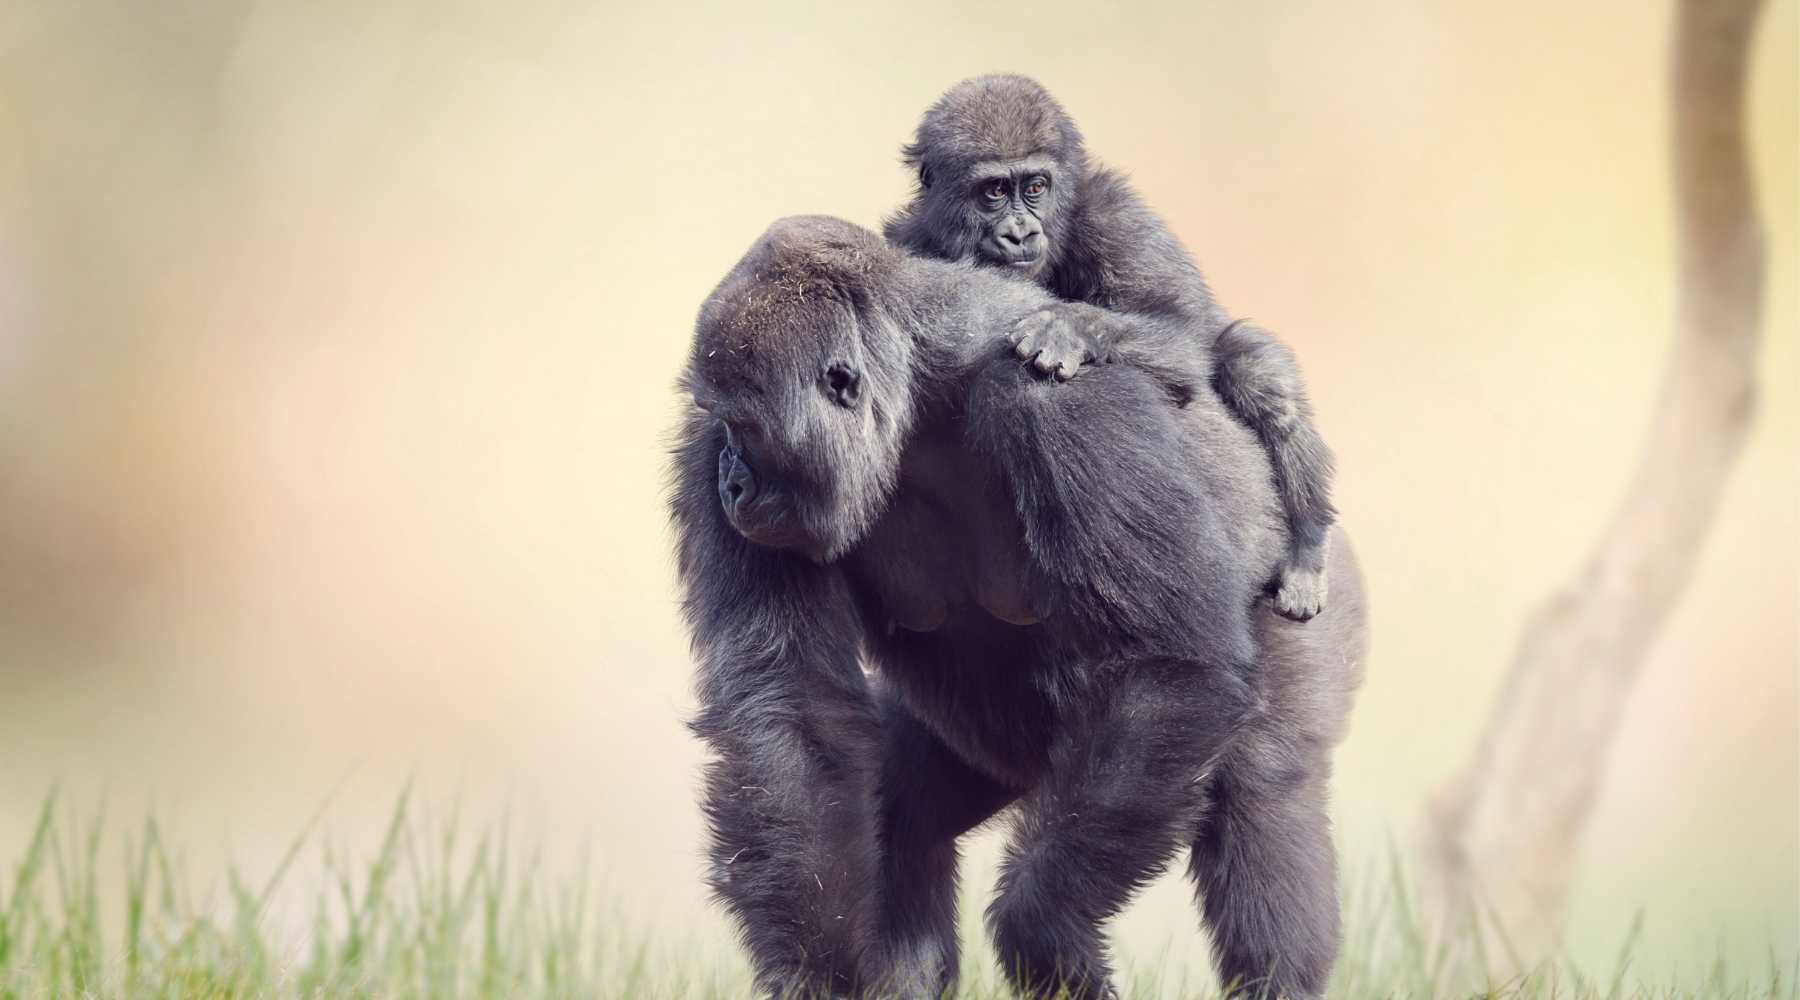 Gorilla Trekking in Rwanda & Uganda